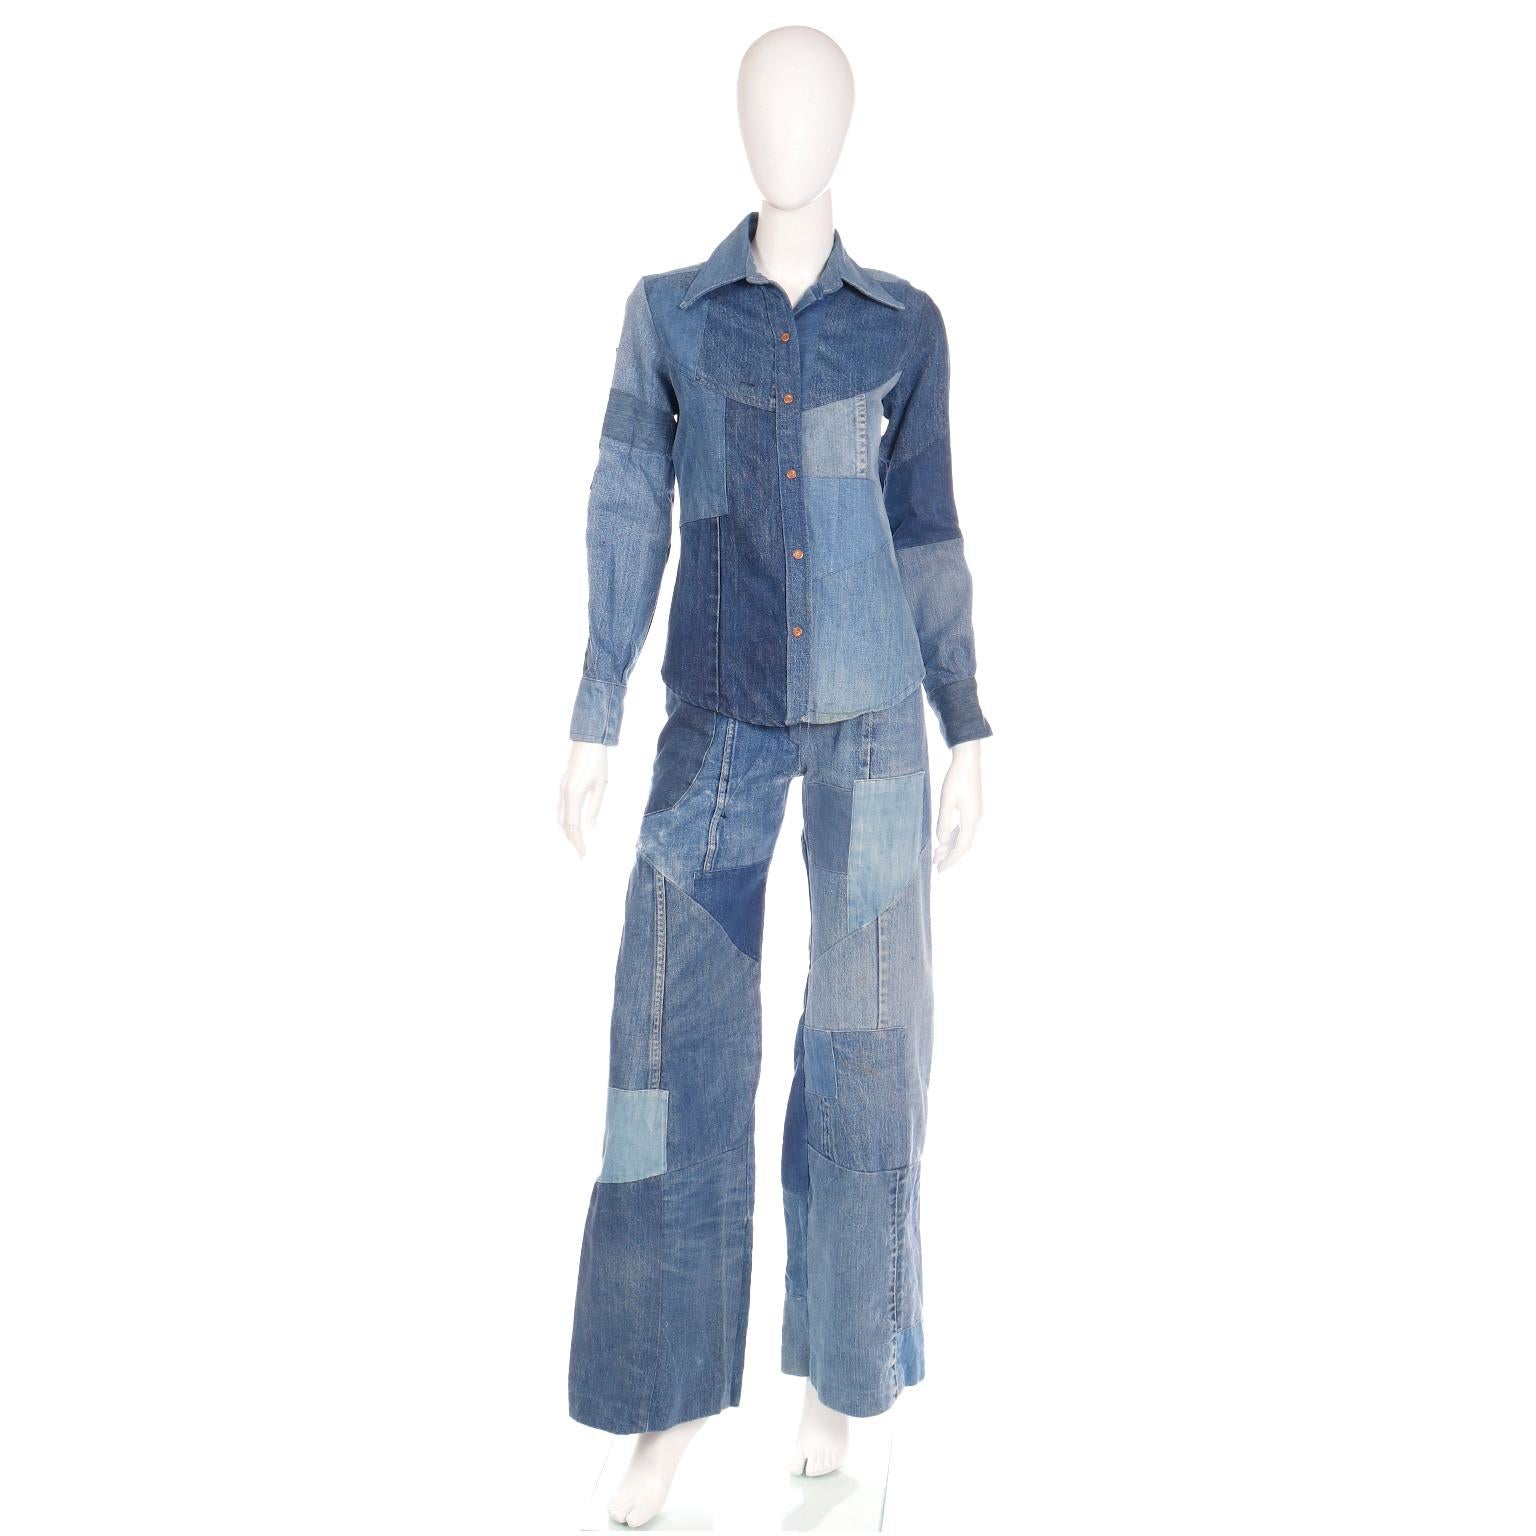 Dieses Vintage-Outfit aus Jeans mit Patchworkmuster und langärmeligem Hemd mit Druckknopfleiste aus den 1970er Jahren stammt aus Simi's Woodland Hills, North Hollywood, Oregon.	Dieses liebevoll getragene Ensemble ist der Inbegriff der 70er Jahre und